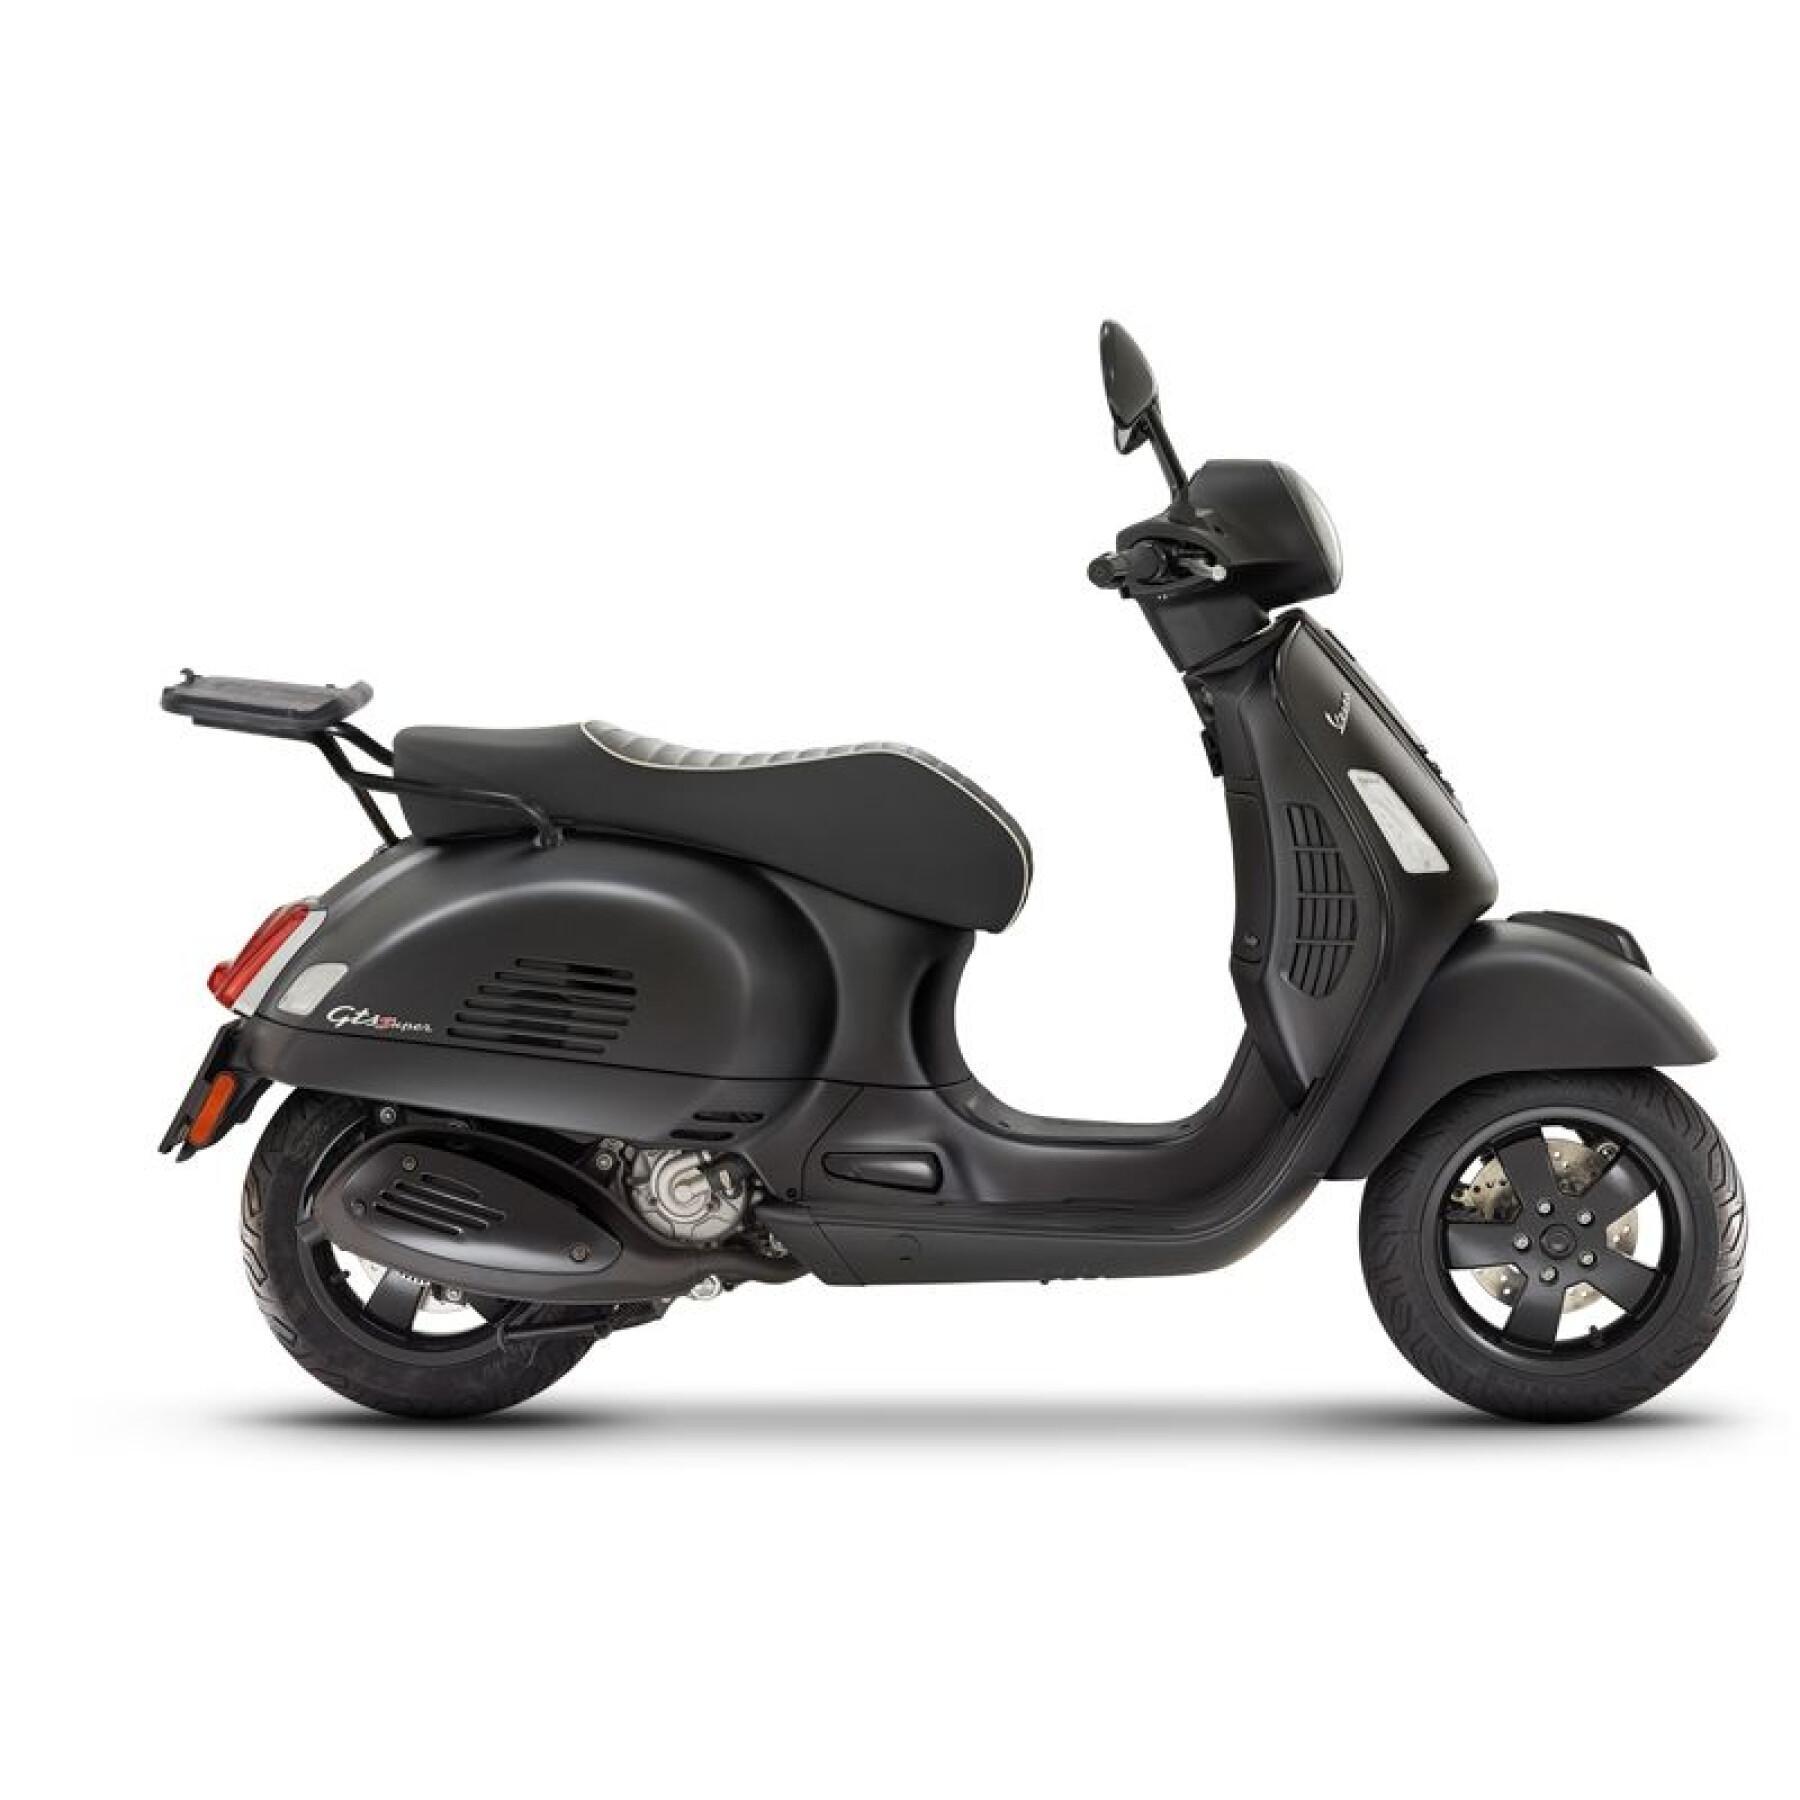 Bauletto per scooter Shad Piaggio Vespa GTS Super 125/300 (da 19 a 21)